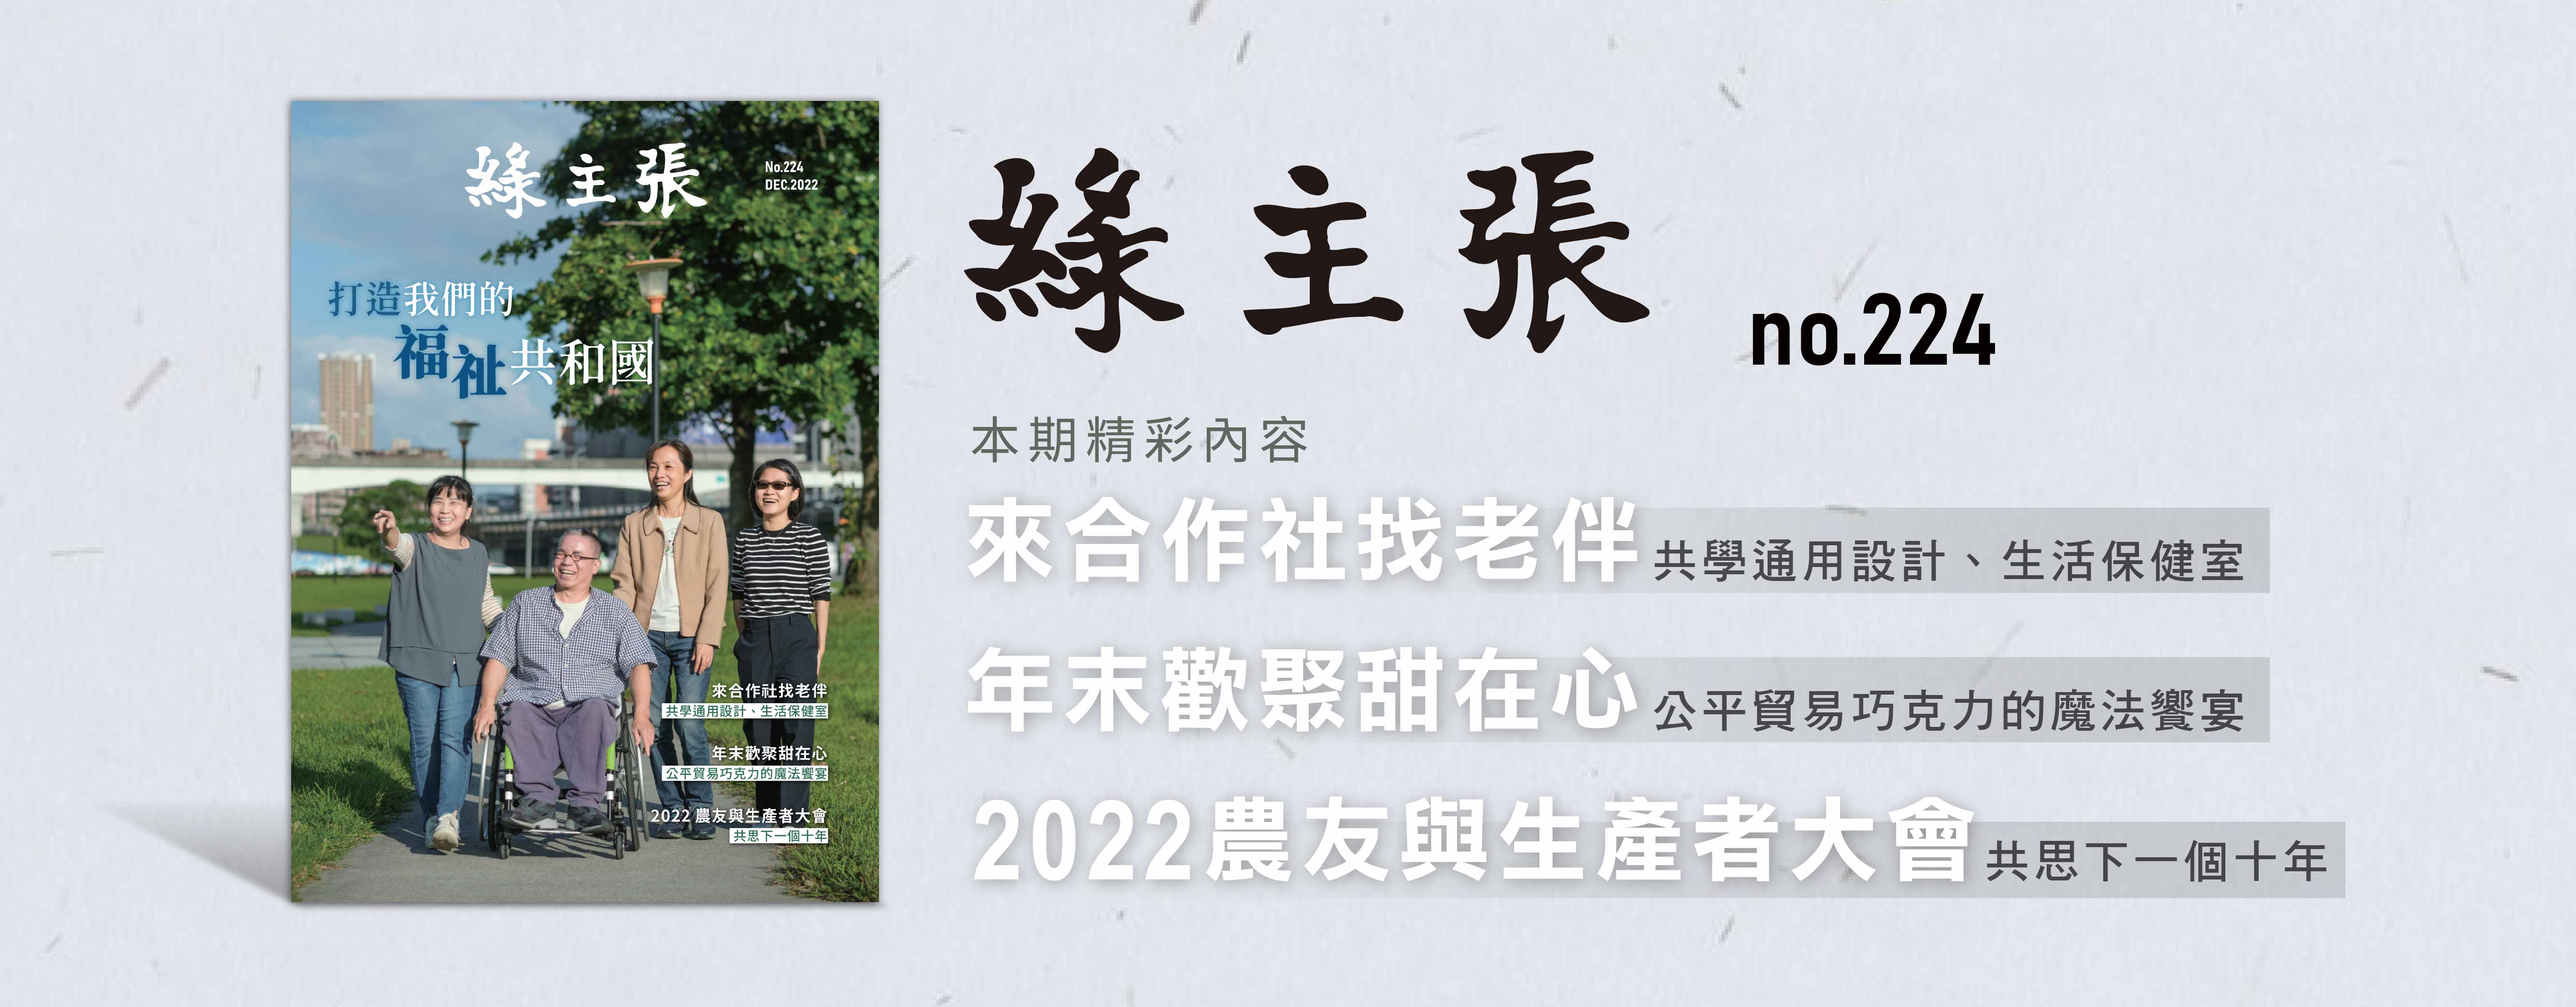 綠主張BN-2022年12月_官網BN